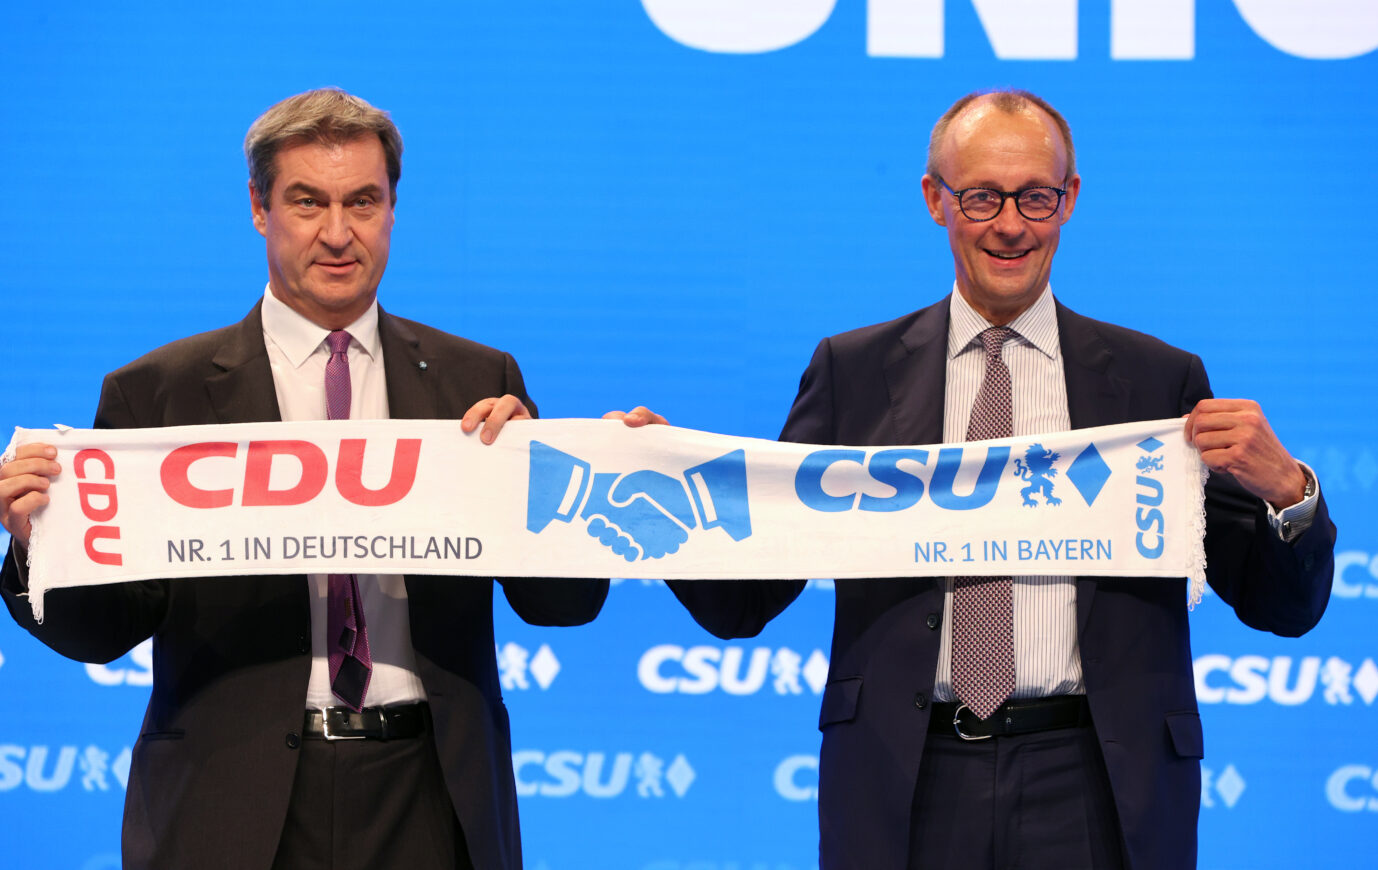 CDU-Parteichef Friedrich Merz (r.) hält zusammen mit Bayerns Ministerpräsident Markus Söder (CSU) gemeinsam einen Parteischal hoch.